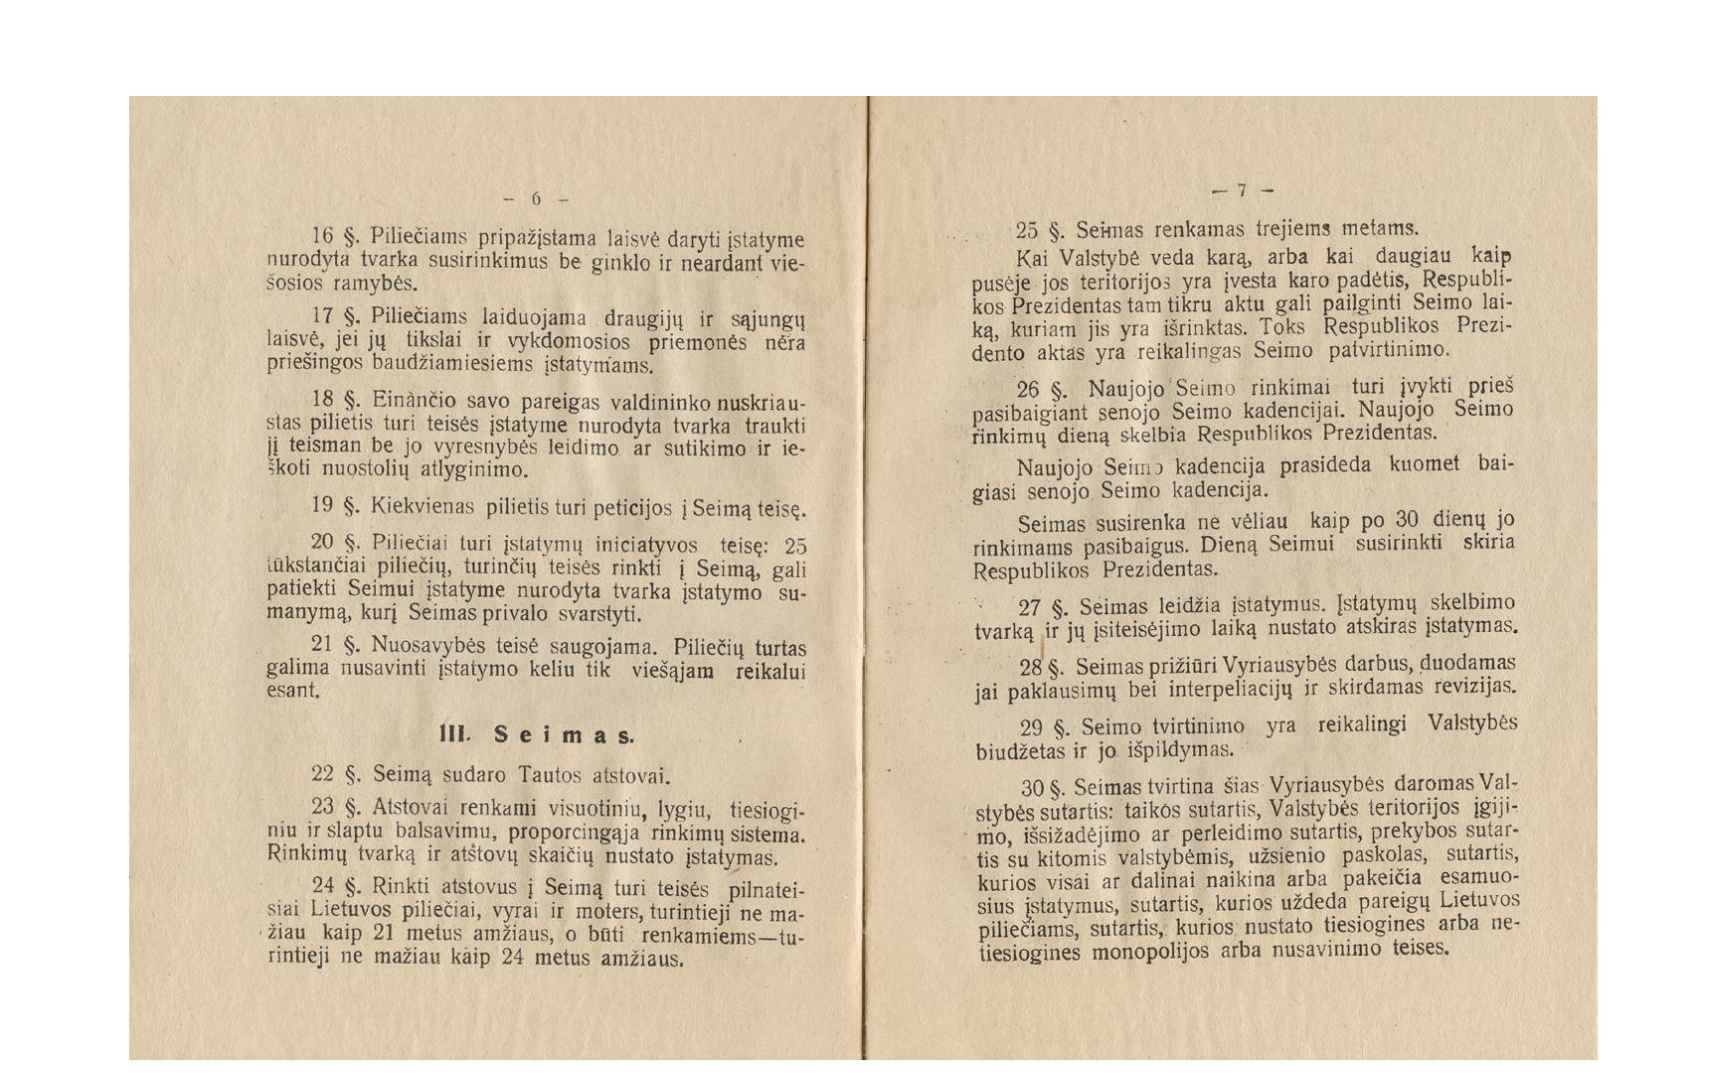 Lietuvos Respublikos Konstitucija su paaiškinimais. Kaunas, išleido V. Jankūnaitė, 1922 m. Lietuvos nacionalinis muziejus